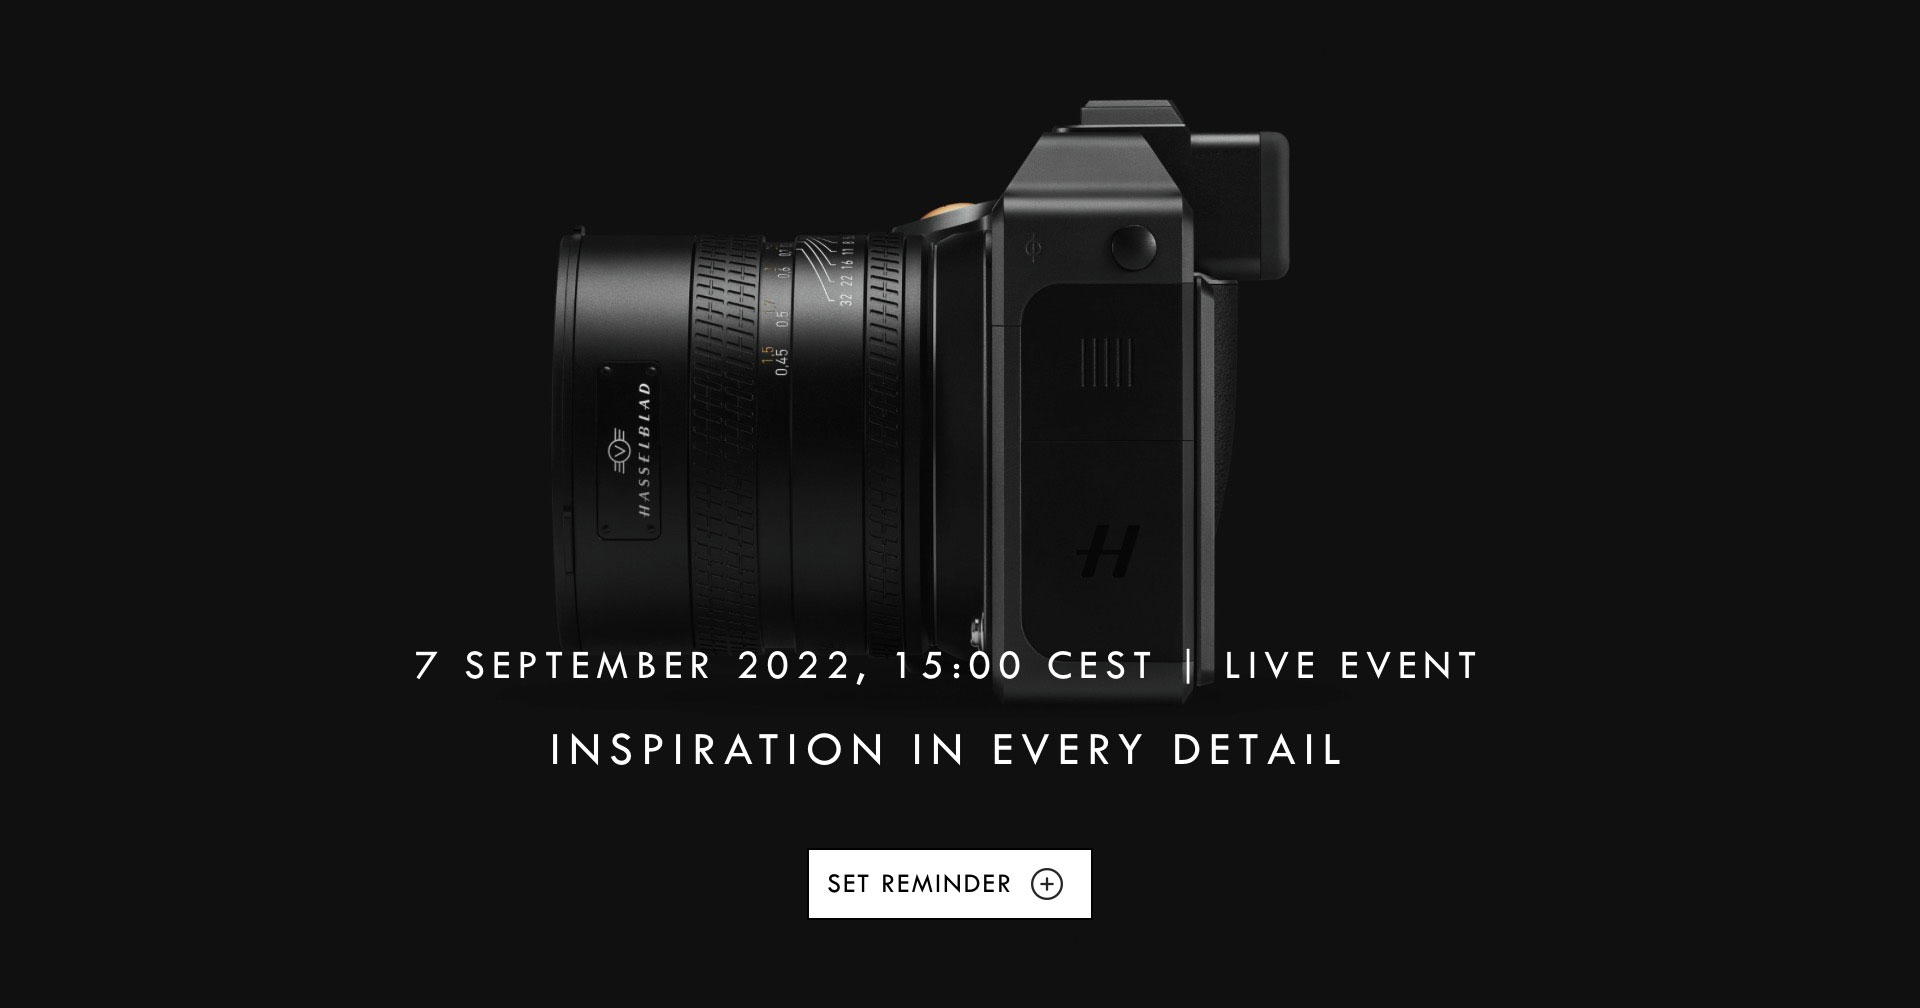 เคาะวันแล้ว! Hasselblad เตรียมเปิดตัวกล้องใหม่ 7 กันยายนนี้